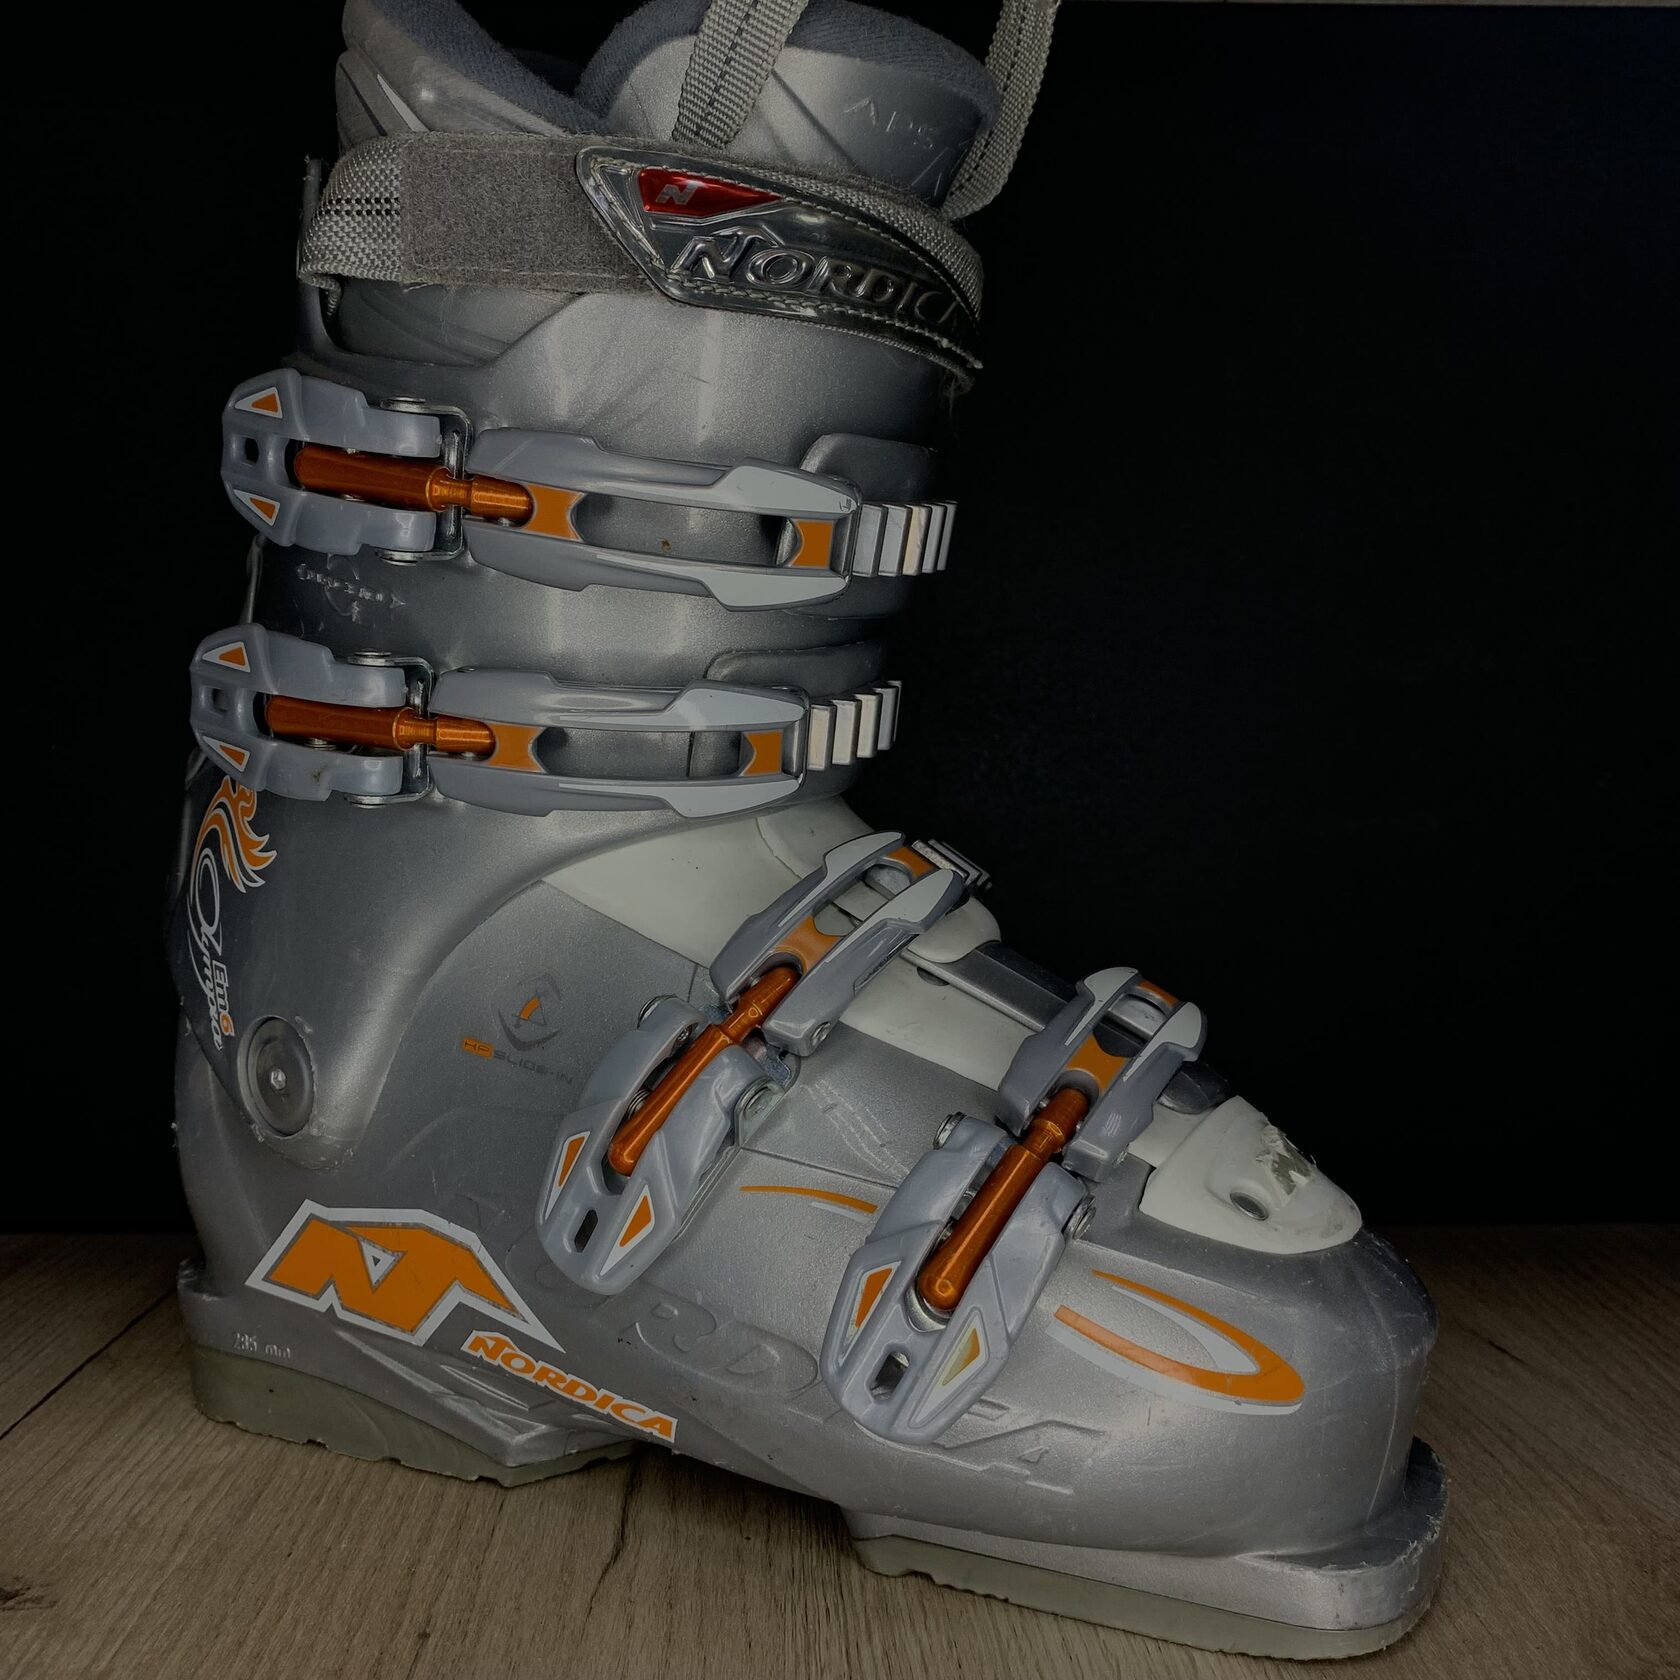 Ботинки NORDICA Flex 40 - прокат горных лыж в Омске